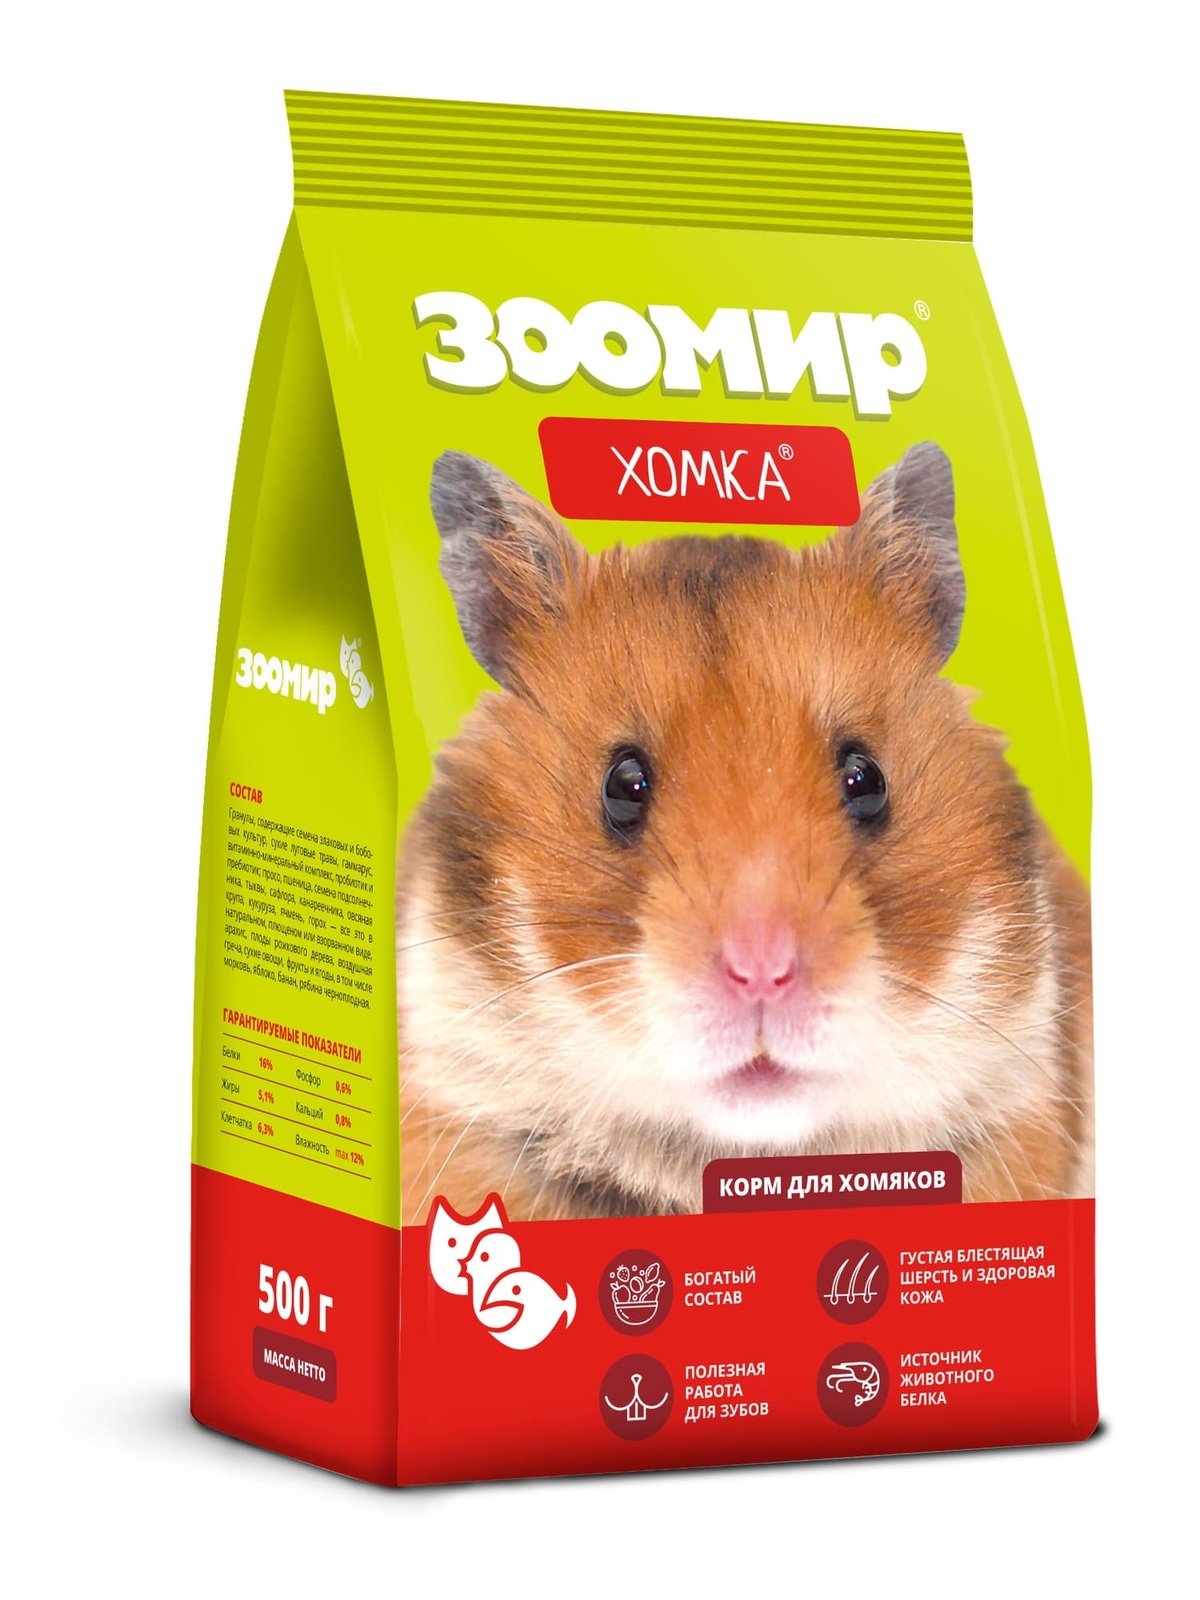 ЗООМИР ЗООМИР корм для хомяков и других мелких грызунов Хомка (500 г) корм для мелких грызунов зоомир кроша 800 г